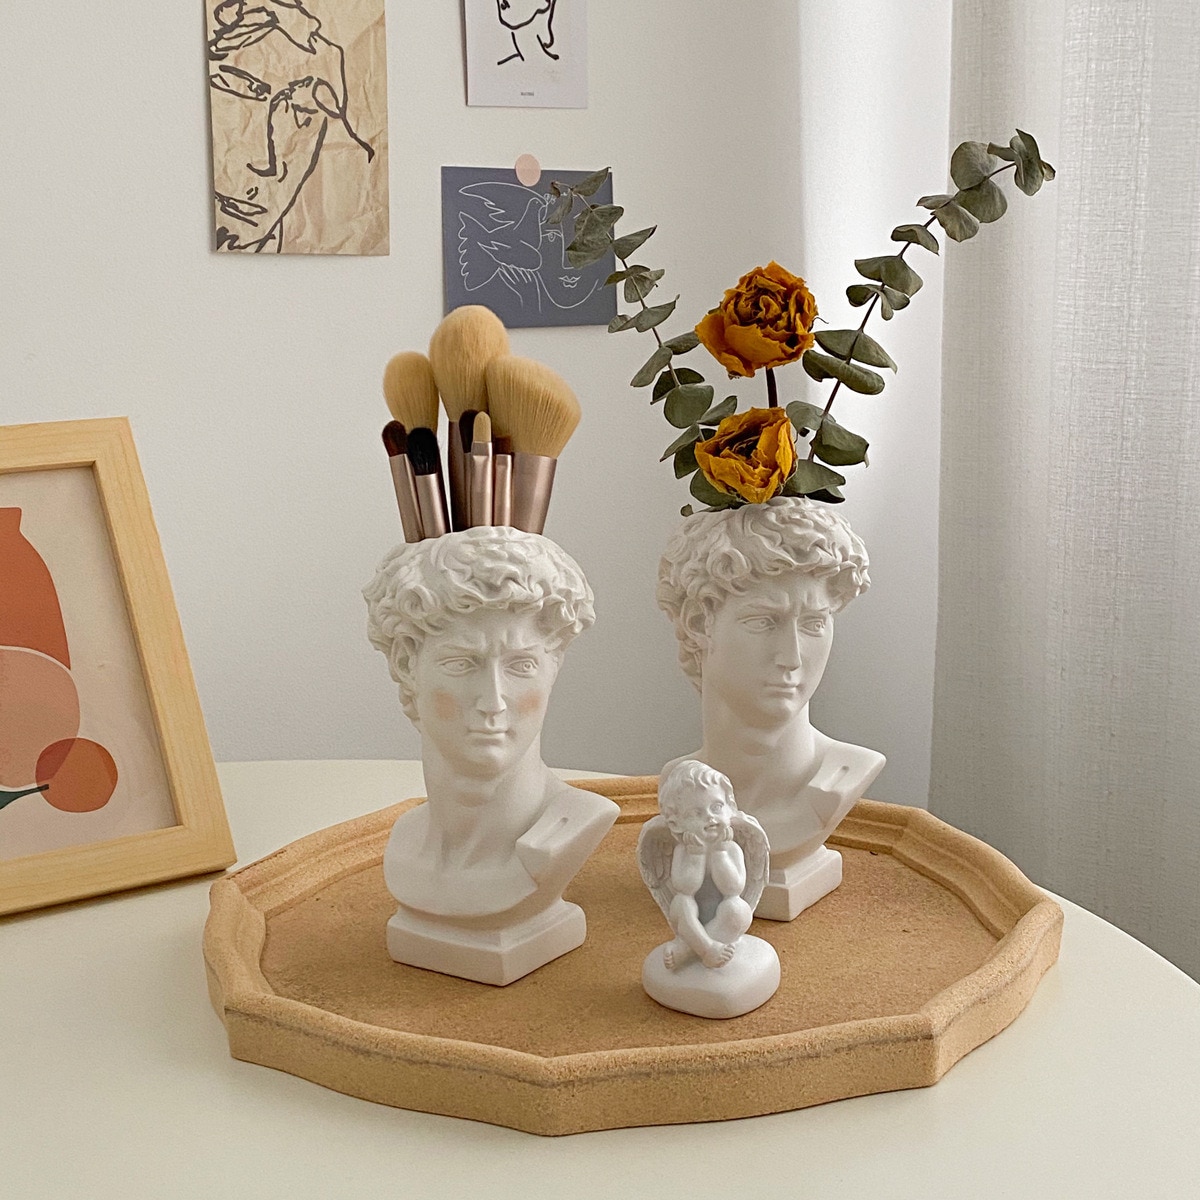 Jarrón de retrato creativo de estilo nórdico moderno, jarrones de flores de cabeza humana, adornos decorativos de resina David, decoración artística para el hogar